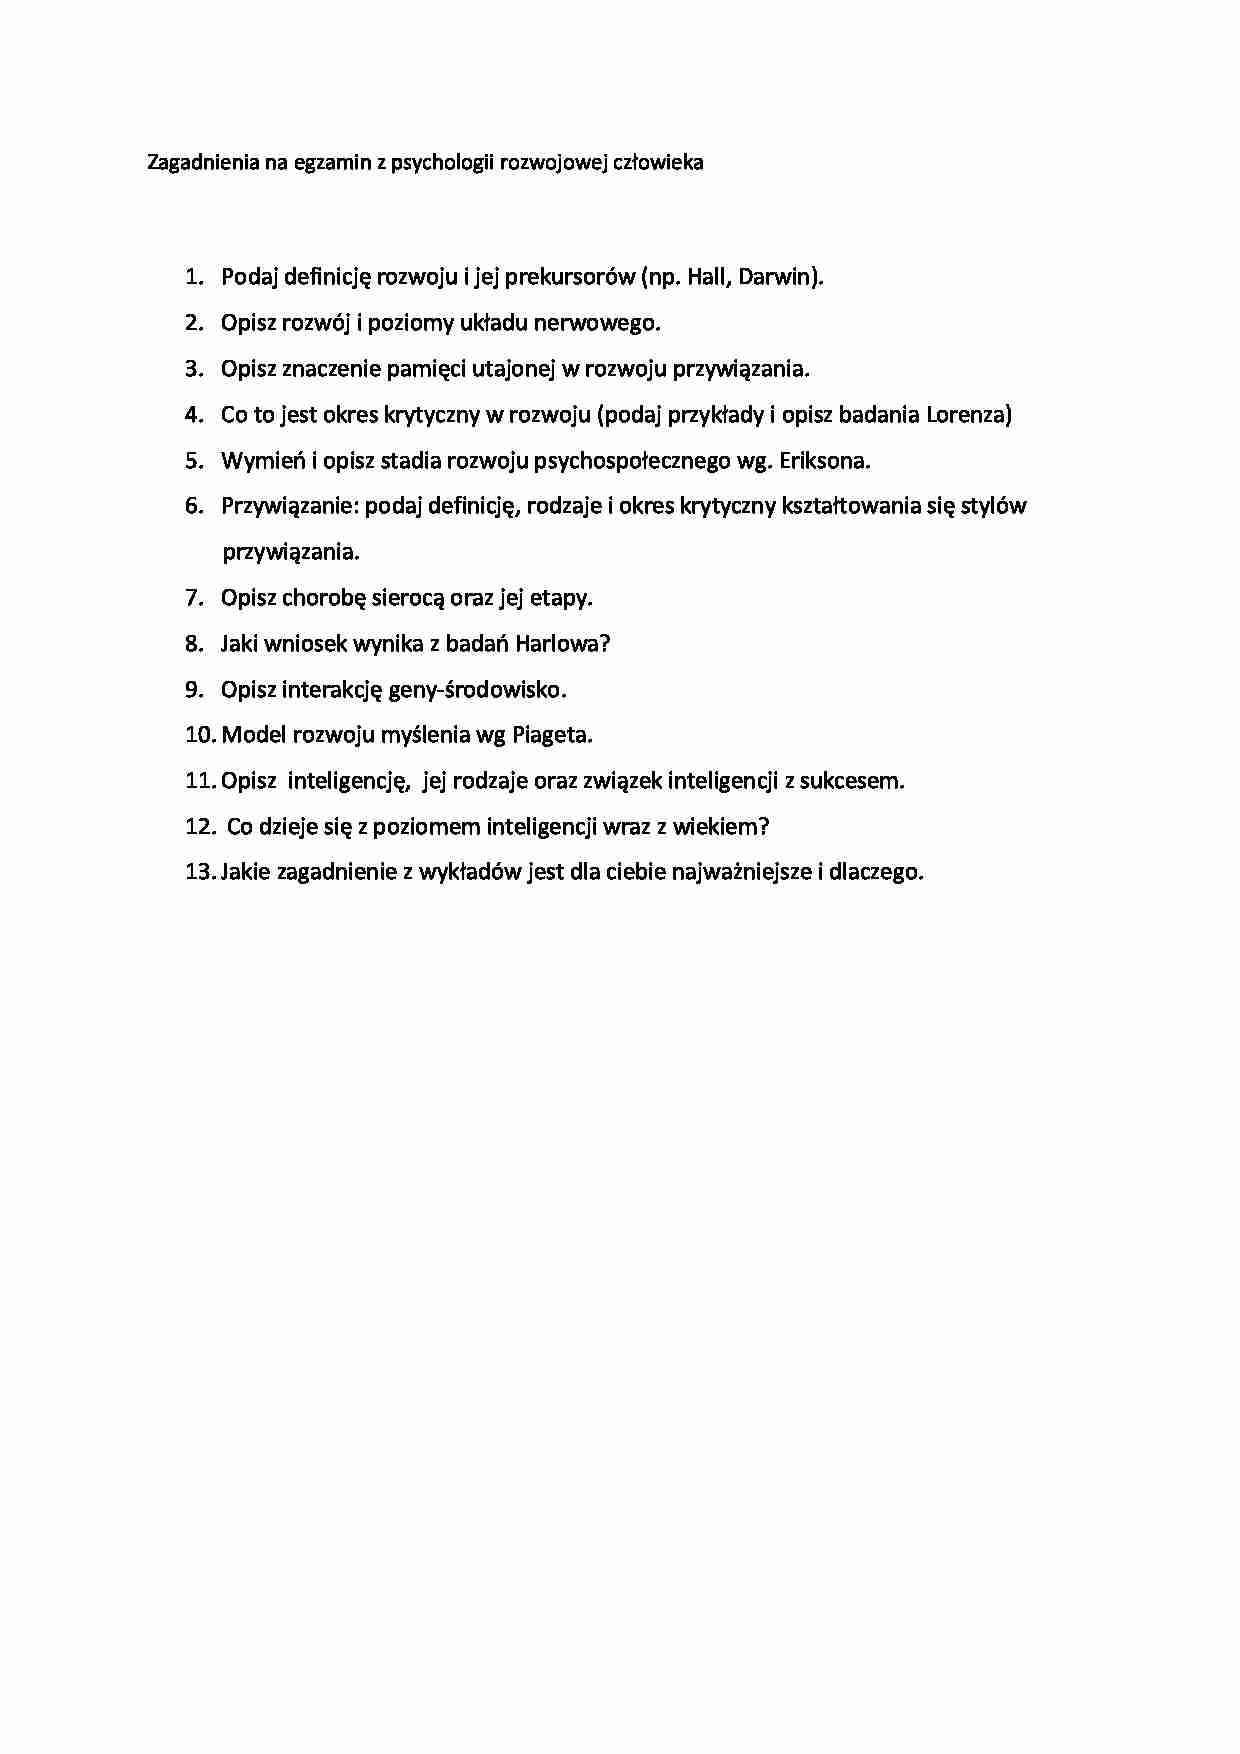 Psychologia rozwoju czlowieka- zagadnienia na egzamin - strona 1